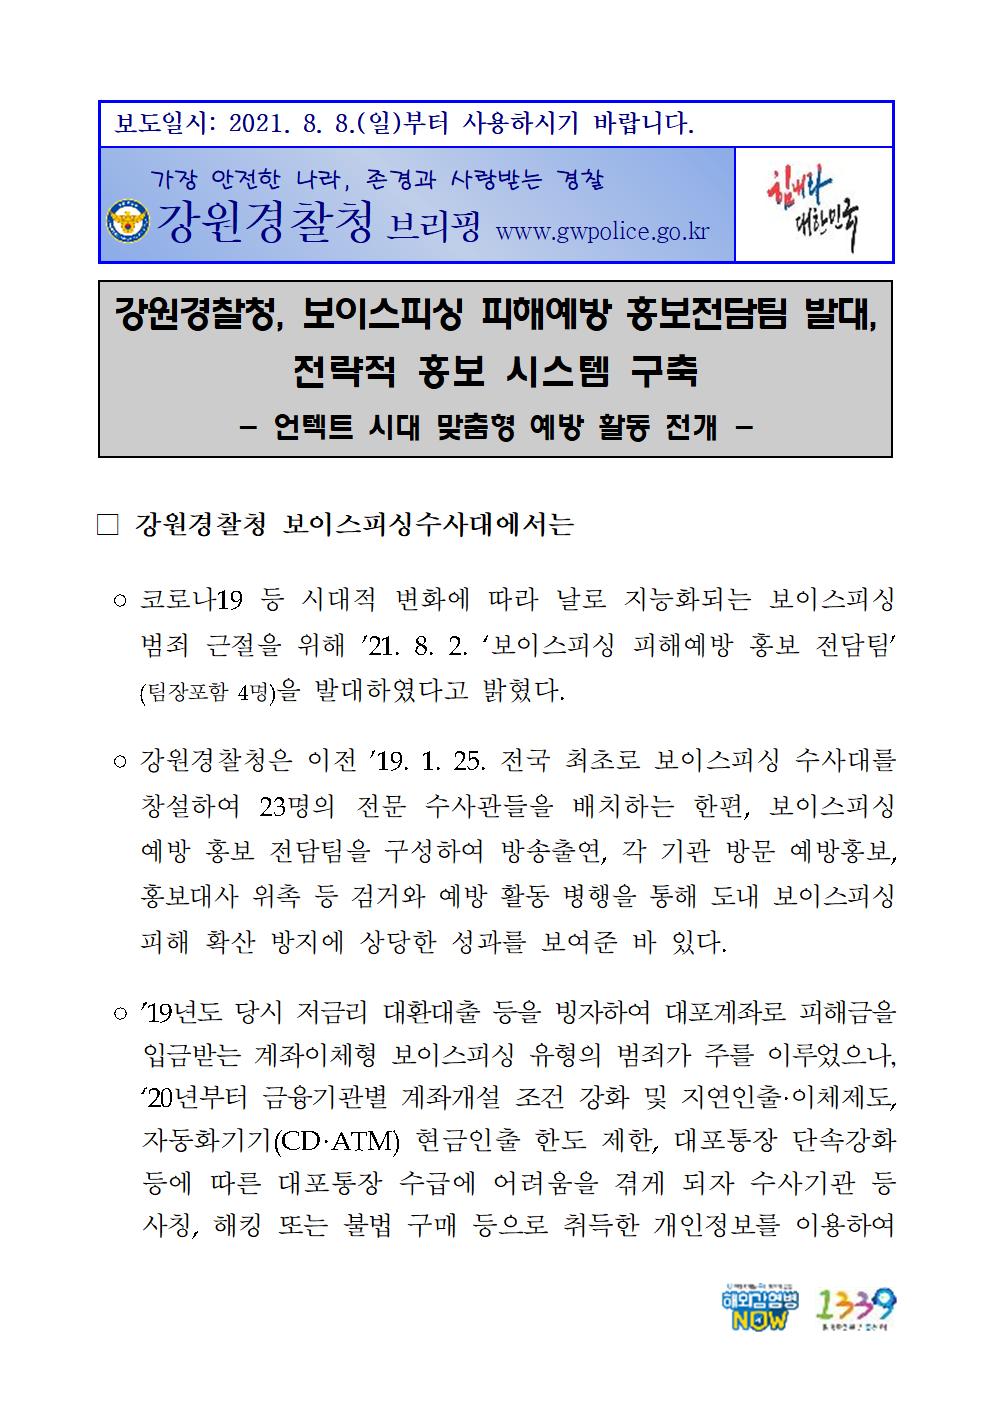 전화금융사기 피해예방 홍보전담팀-전화금융사기 피해예방 홍보전담팀001